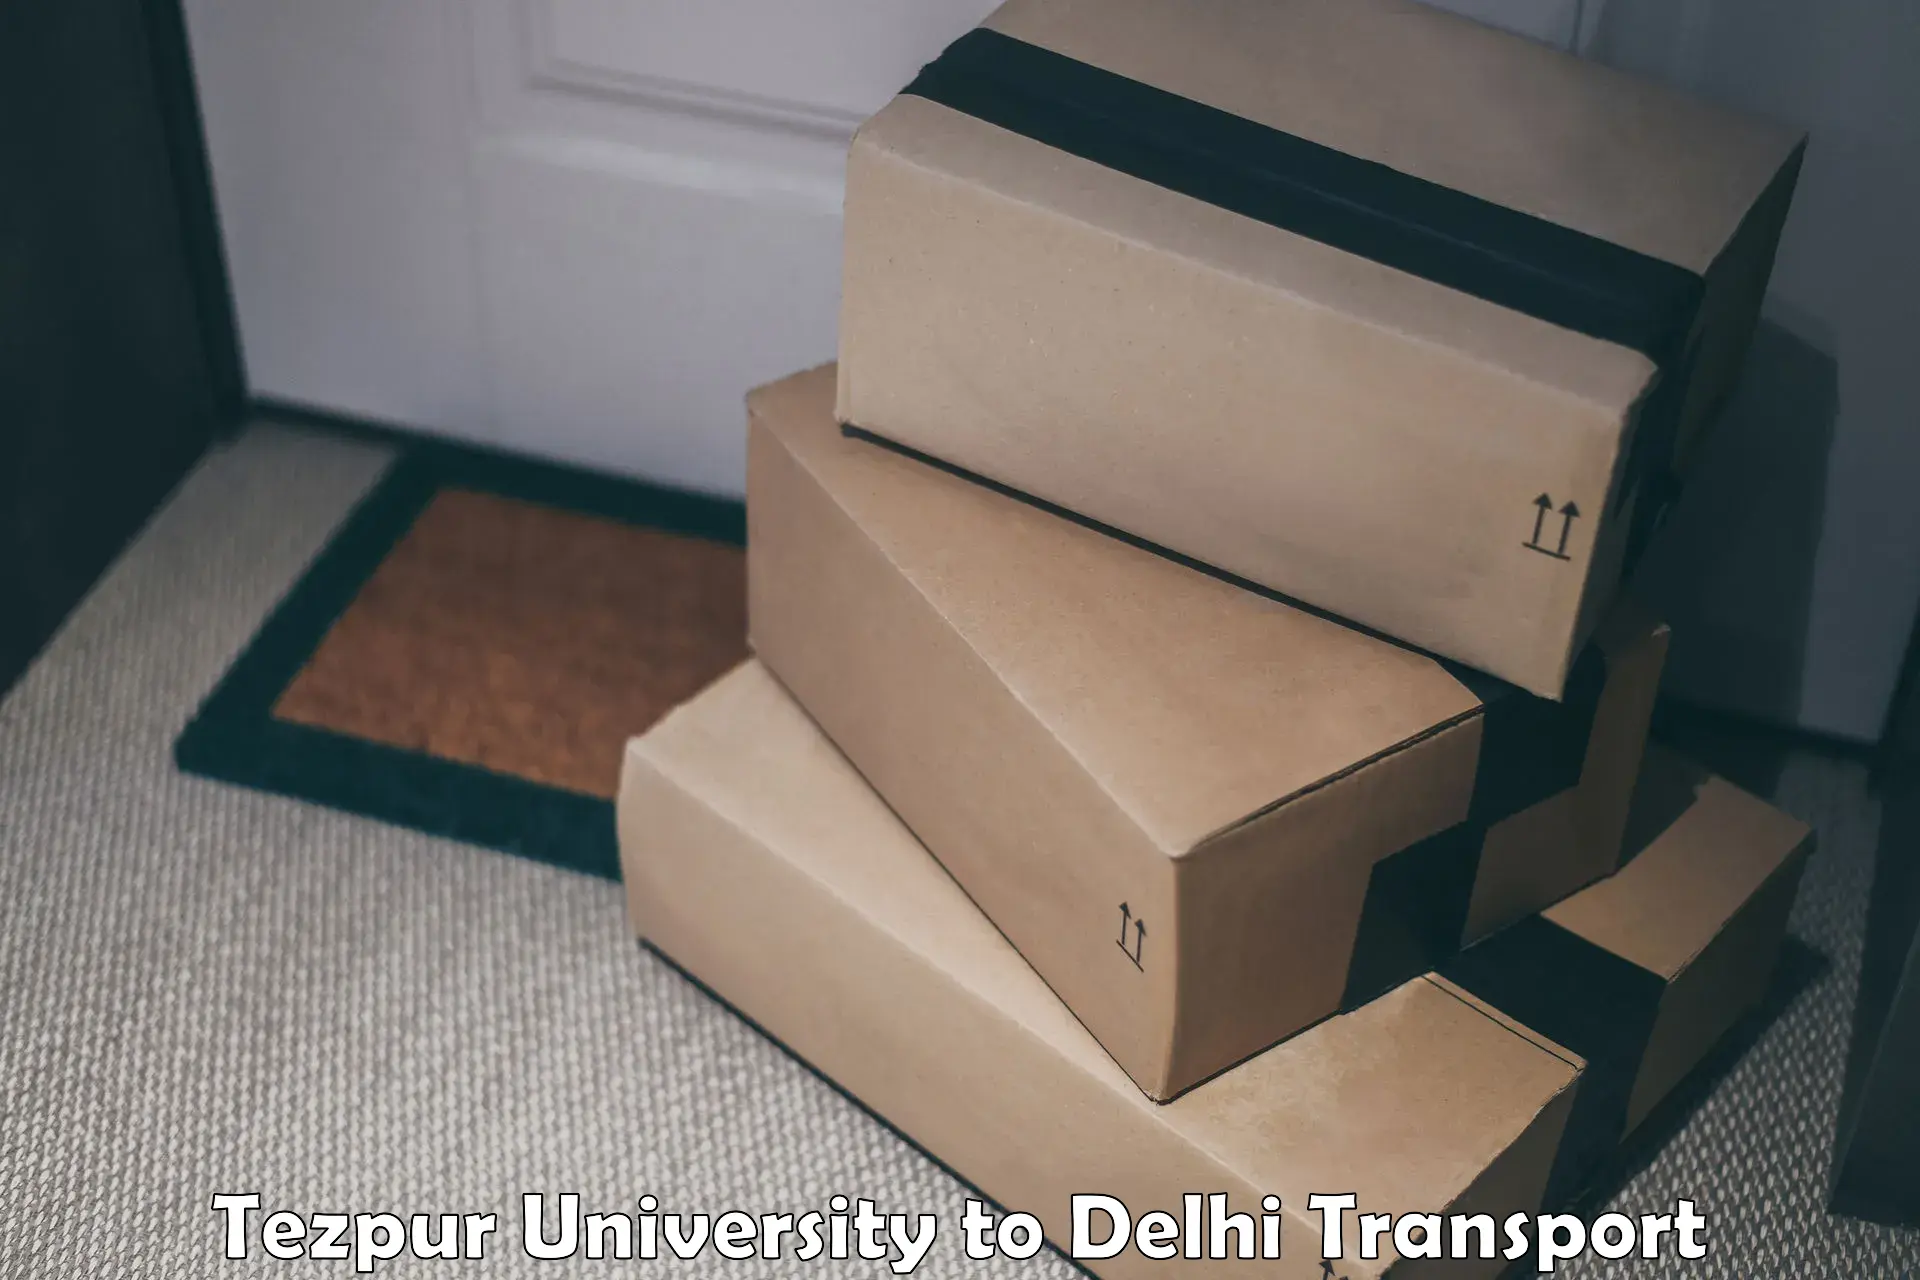 Lorry transport service Tezpur University to Kalkaji